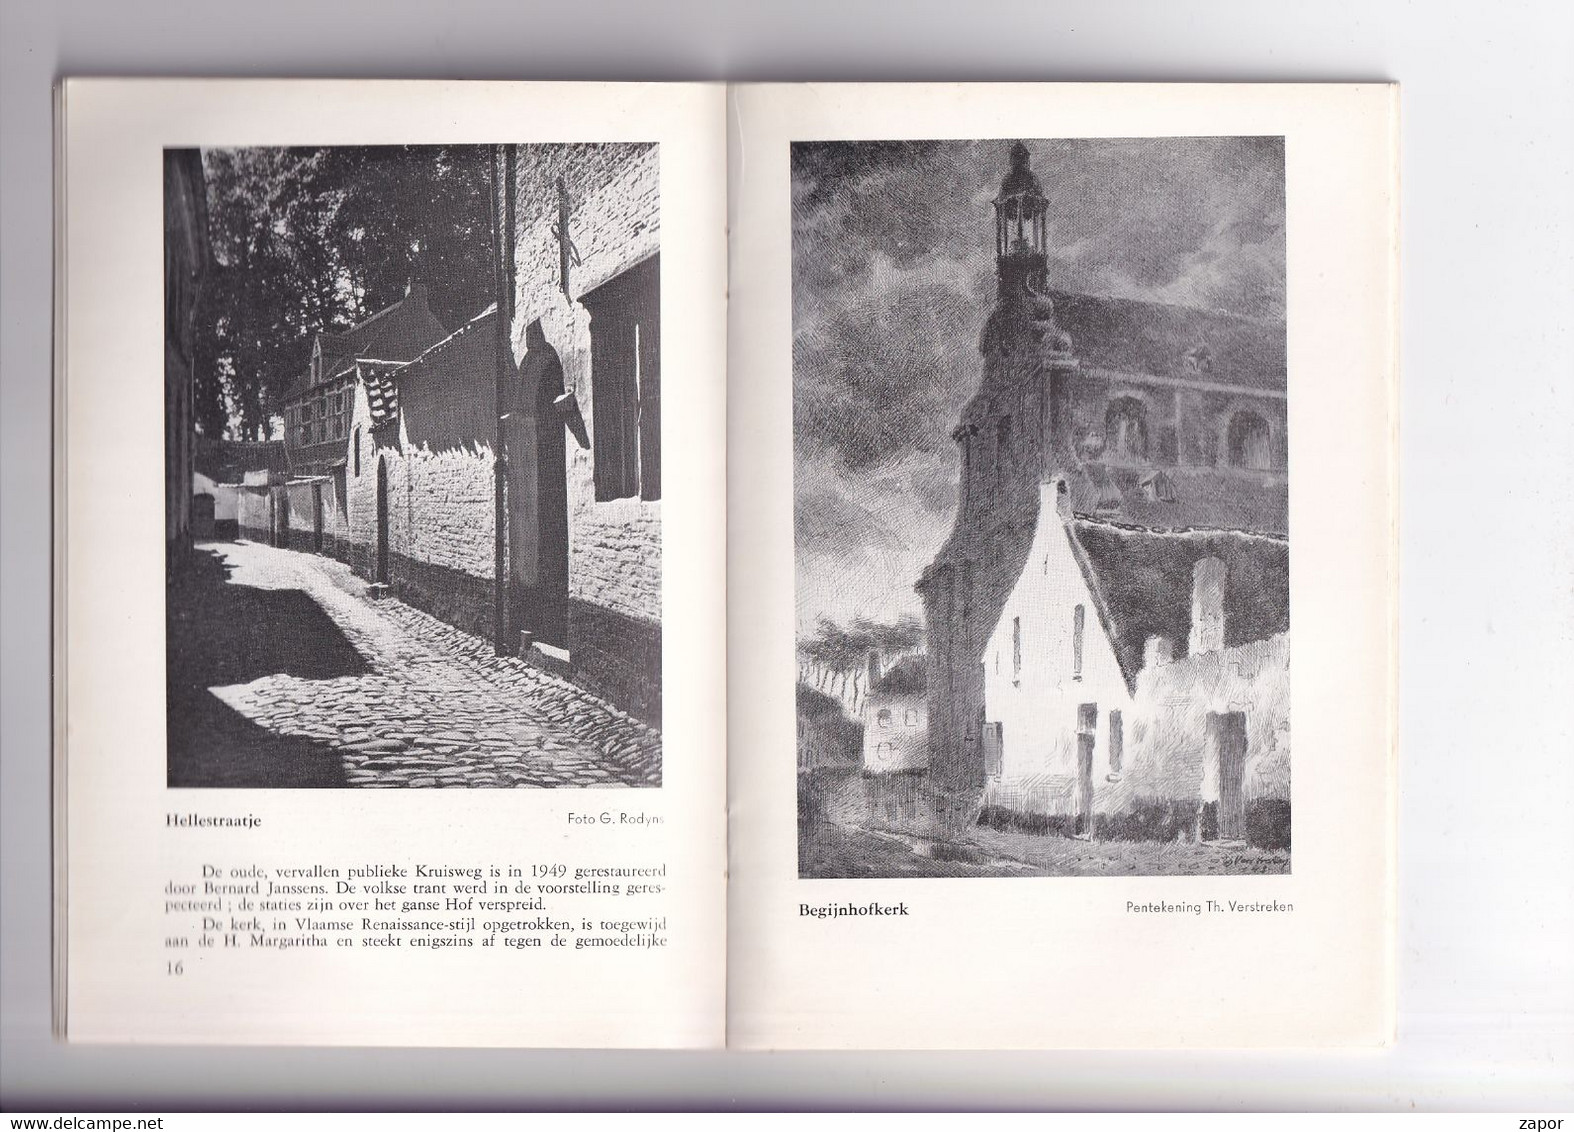 Lier - Gids Voor De Toerist - Boekje Van 36p - 1950 - Frans Verstreken - Tourism